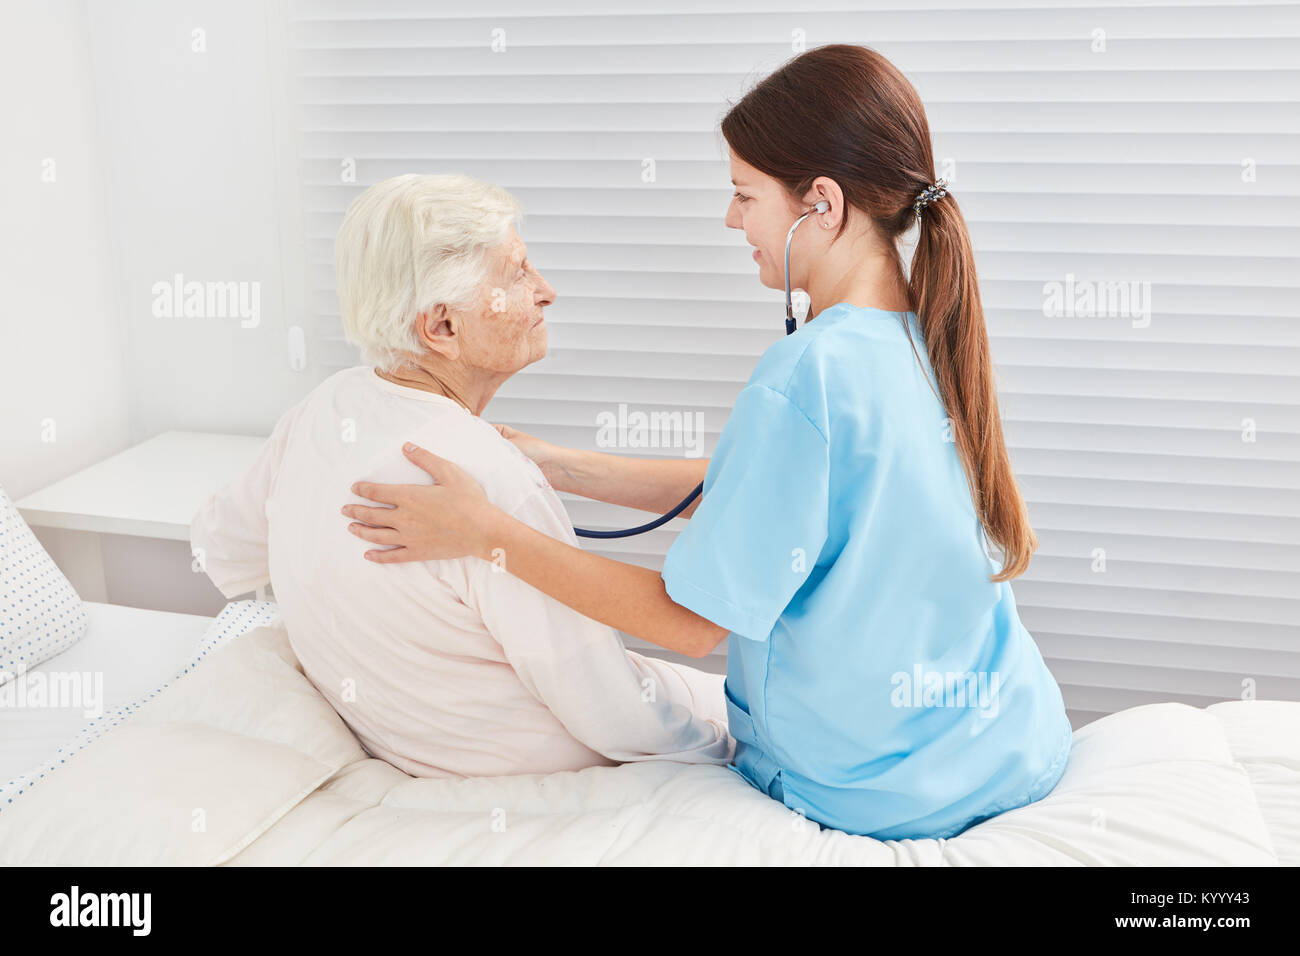 Infermiera con uno stetoscopio sta esaminando un malato donna anziana Foto Stock